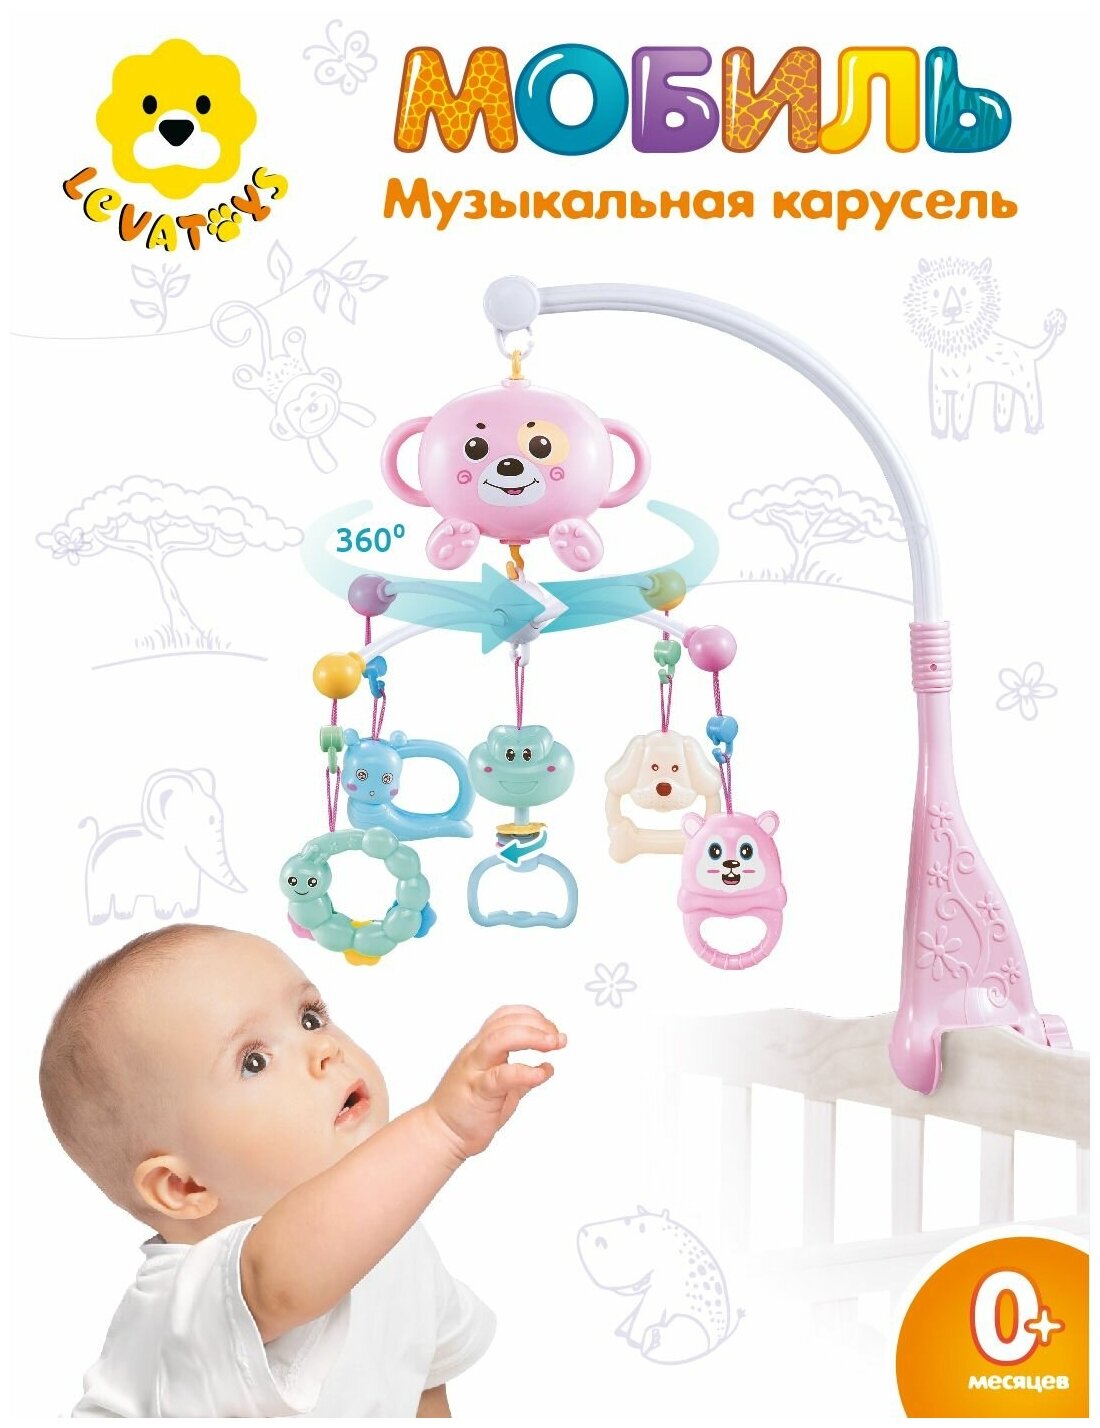 Мобиль карусель Levatoys для детской кроватки, коляски, 5 съёмных игрушек-прорезывателей, колыбельные, музыкальная карусель